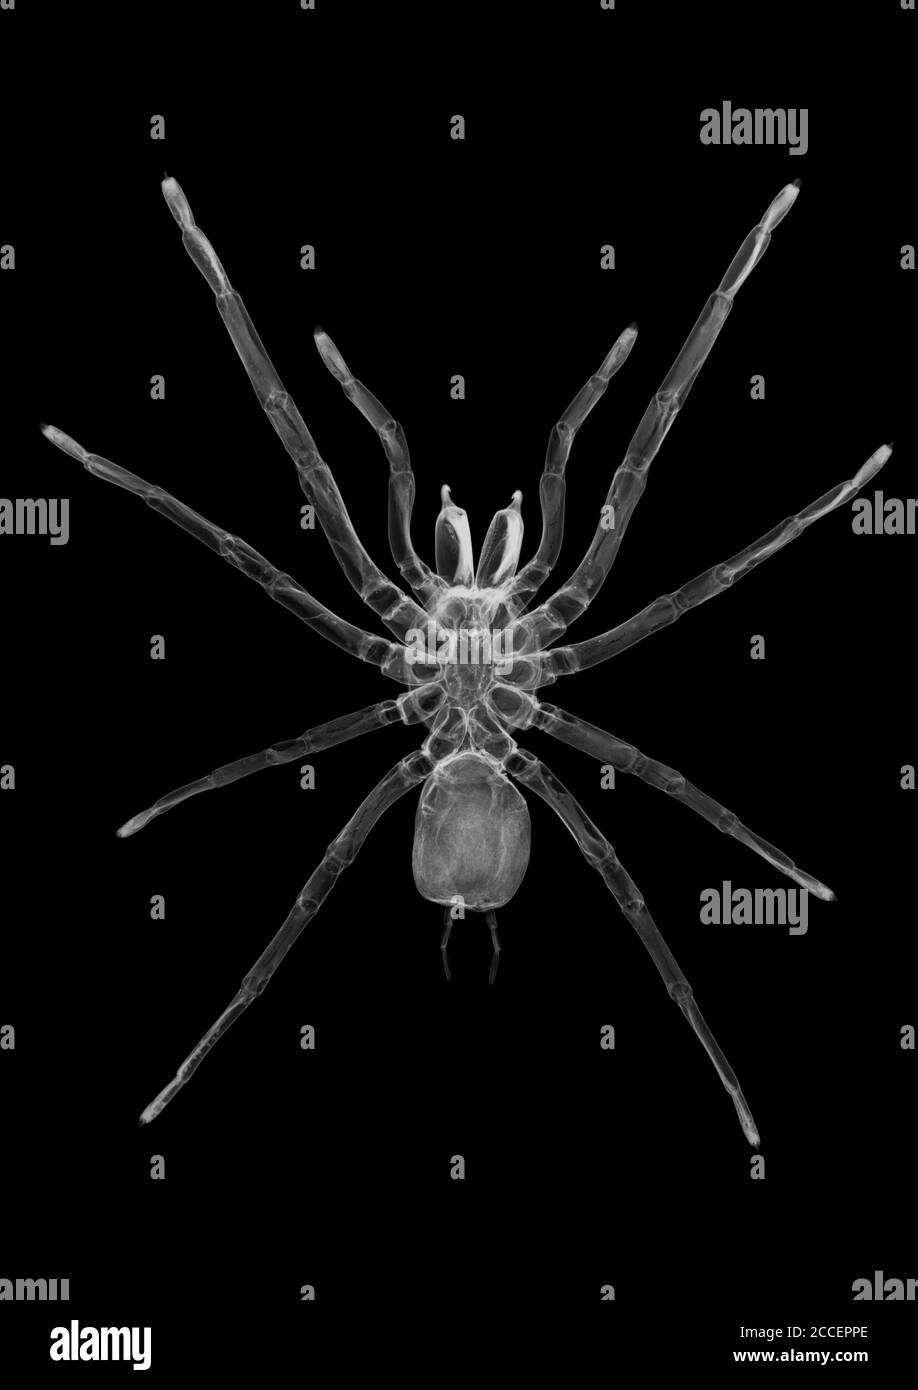 Tarantula spider, X-ray Stock Photo